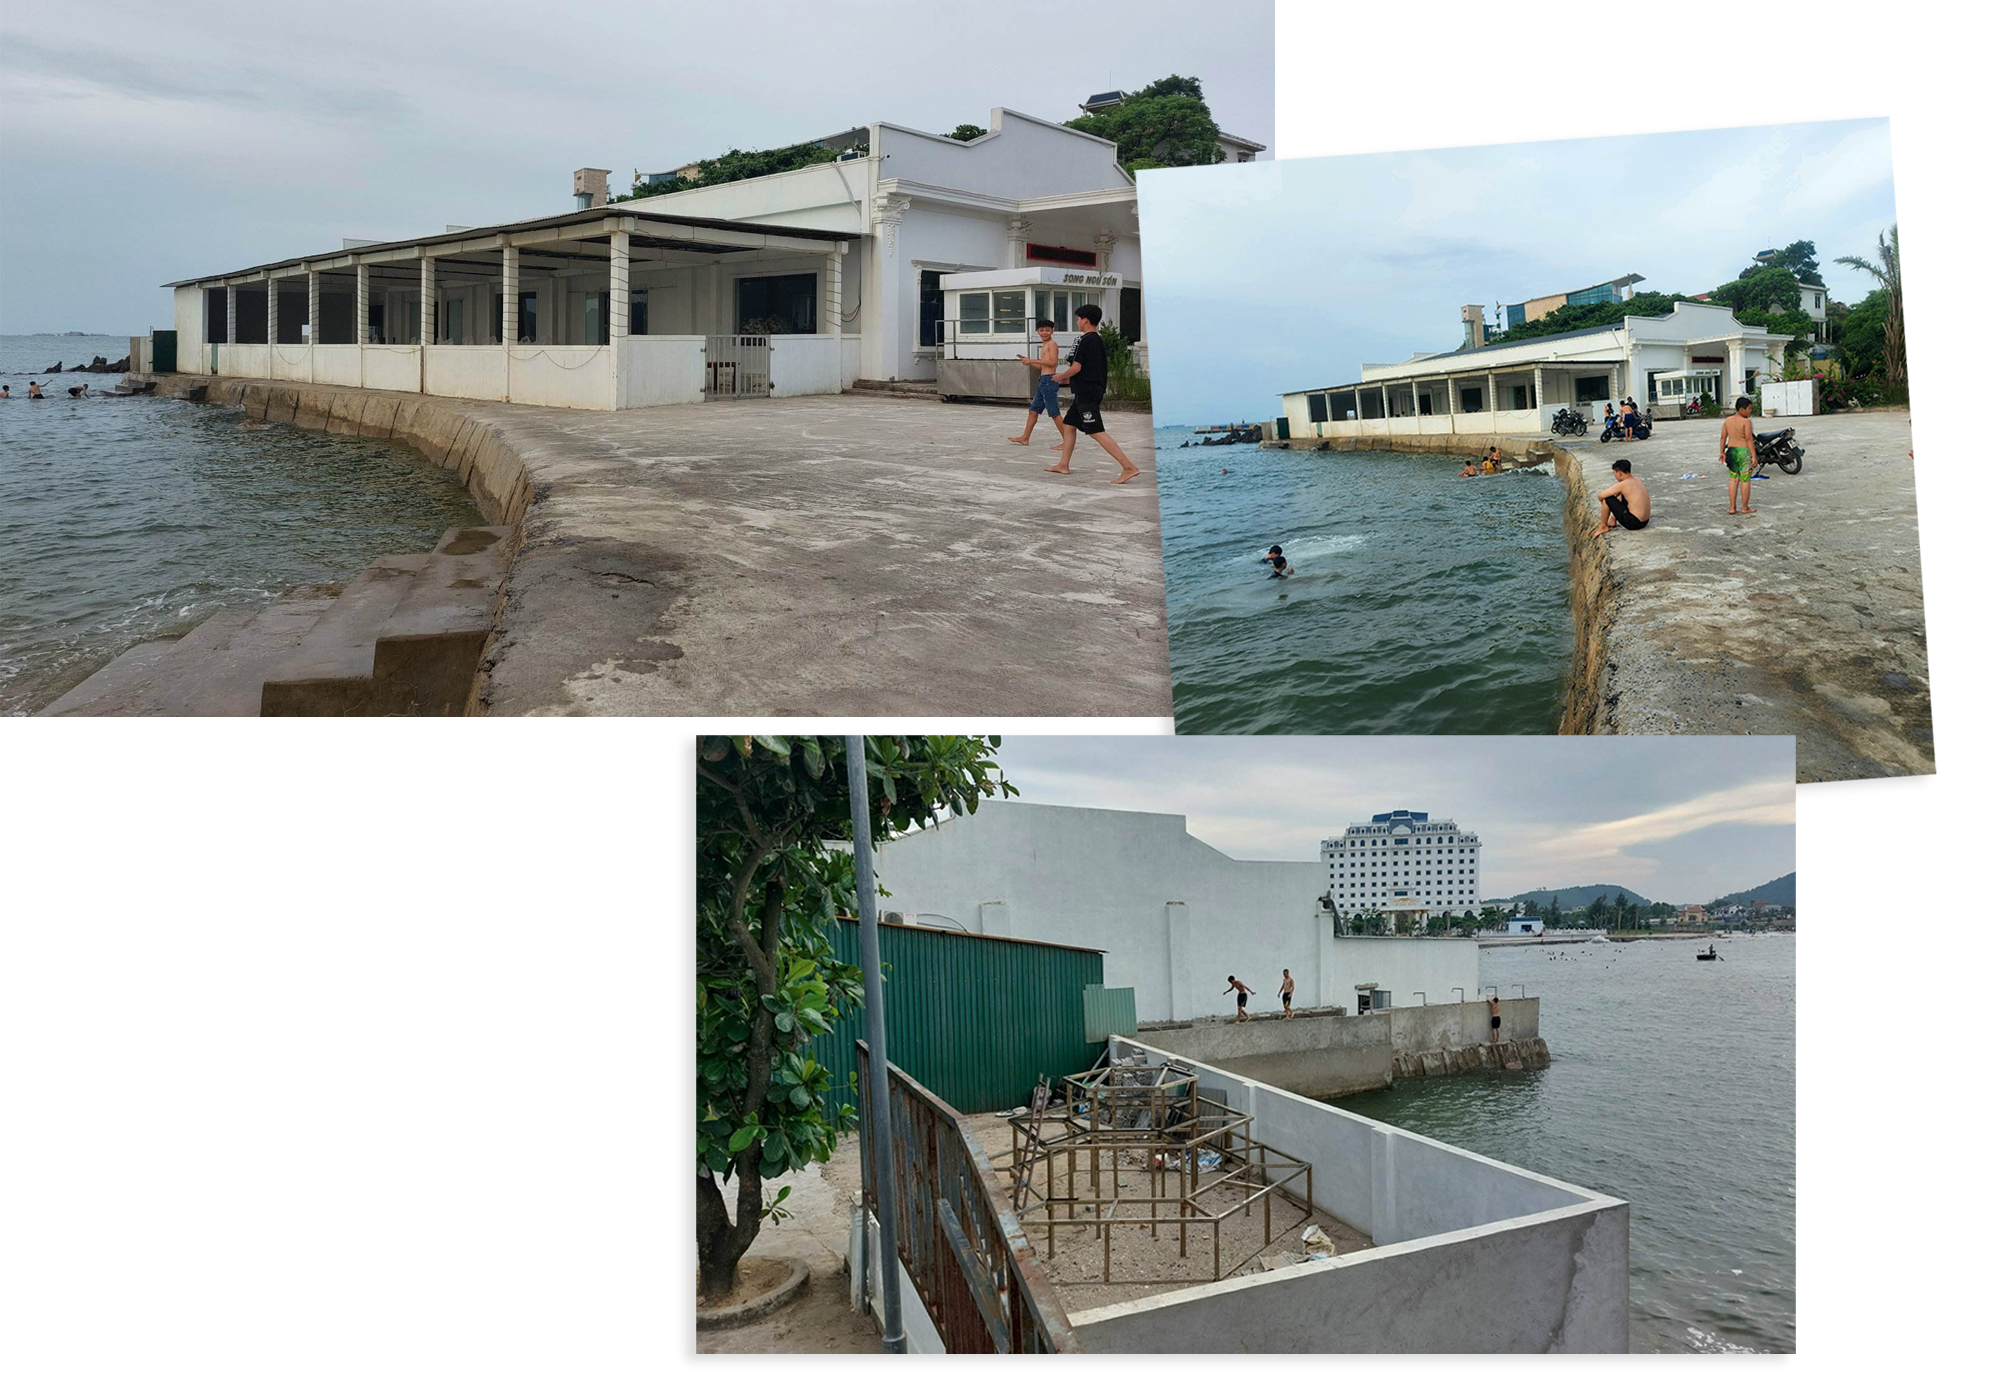 Nhà hàng dưới chân đảo Lan Châu và kè biển phía Bắc là 2 công trình có sai phạm, ảnh hưởng xấu đến cảnh quan đảo Lan Châu và bãi biển Cửa Lò.